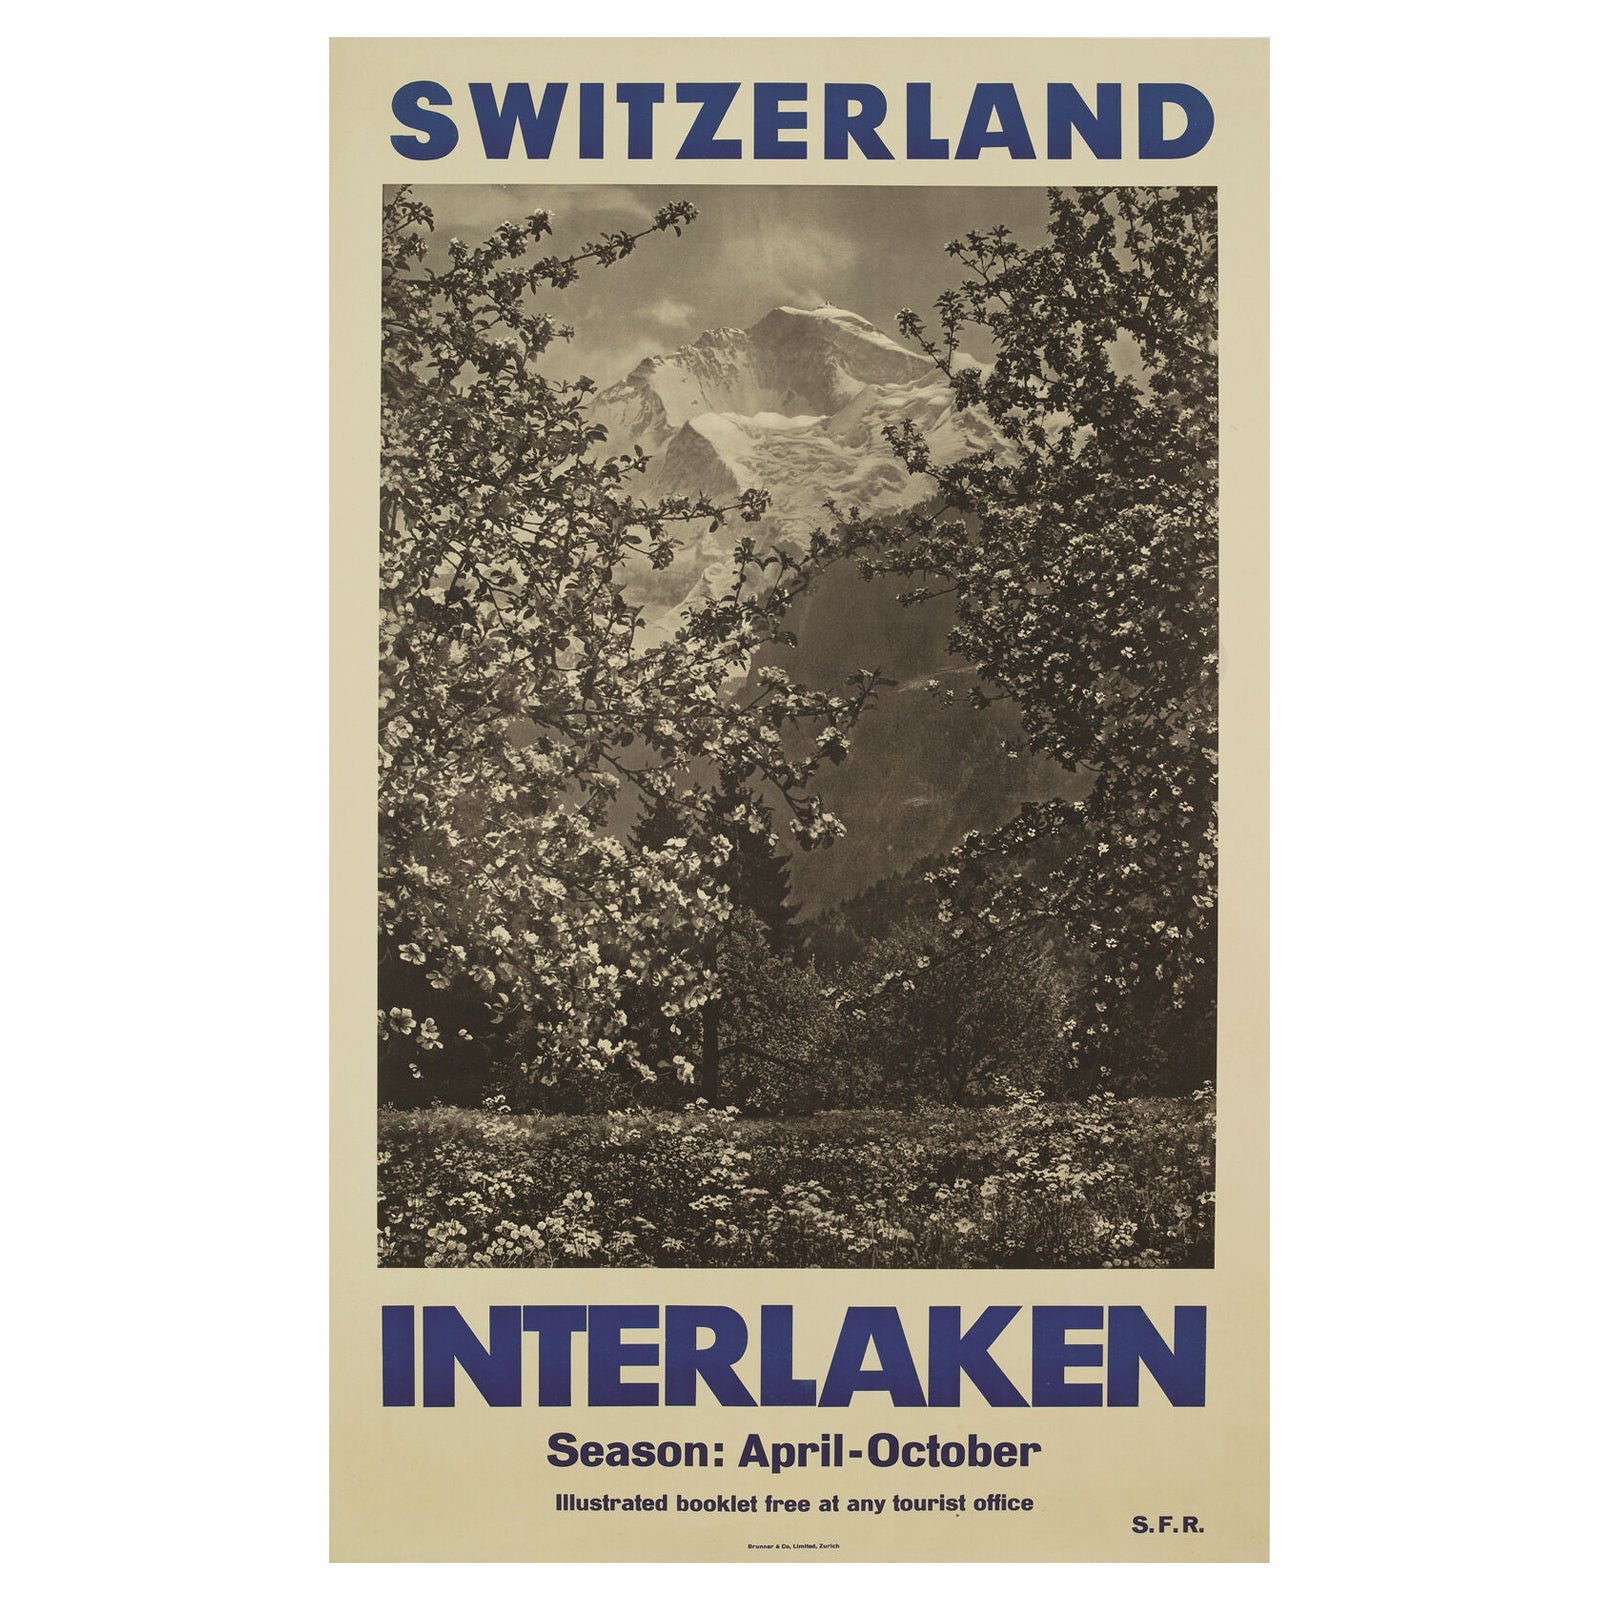 Schweizer Vintage-Reiseplakat, Interlaken, Berge und Ski, 1950